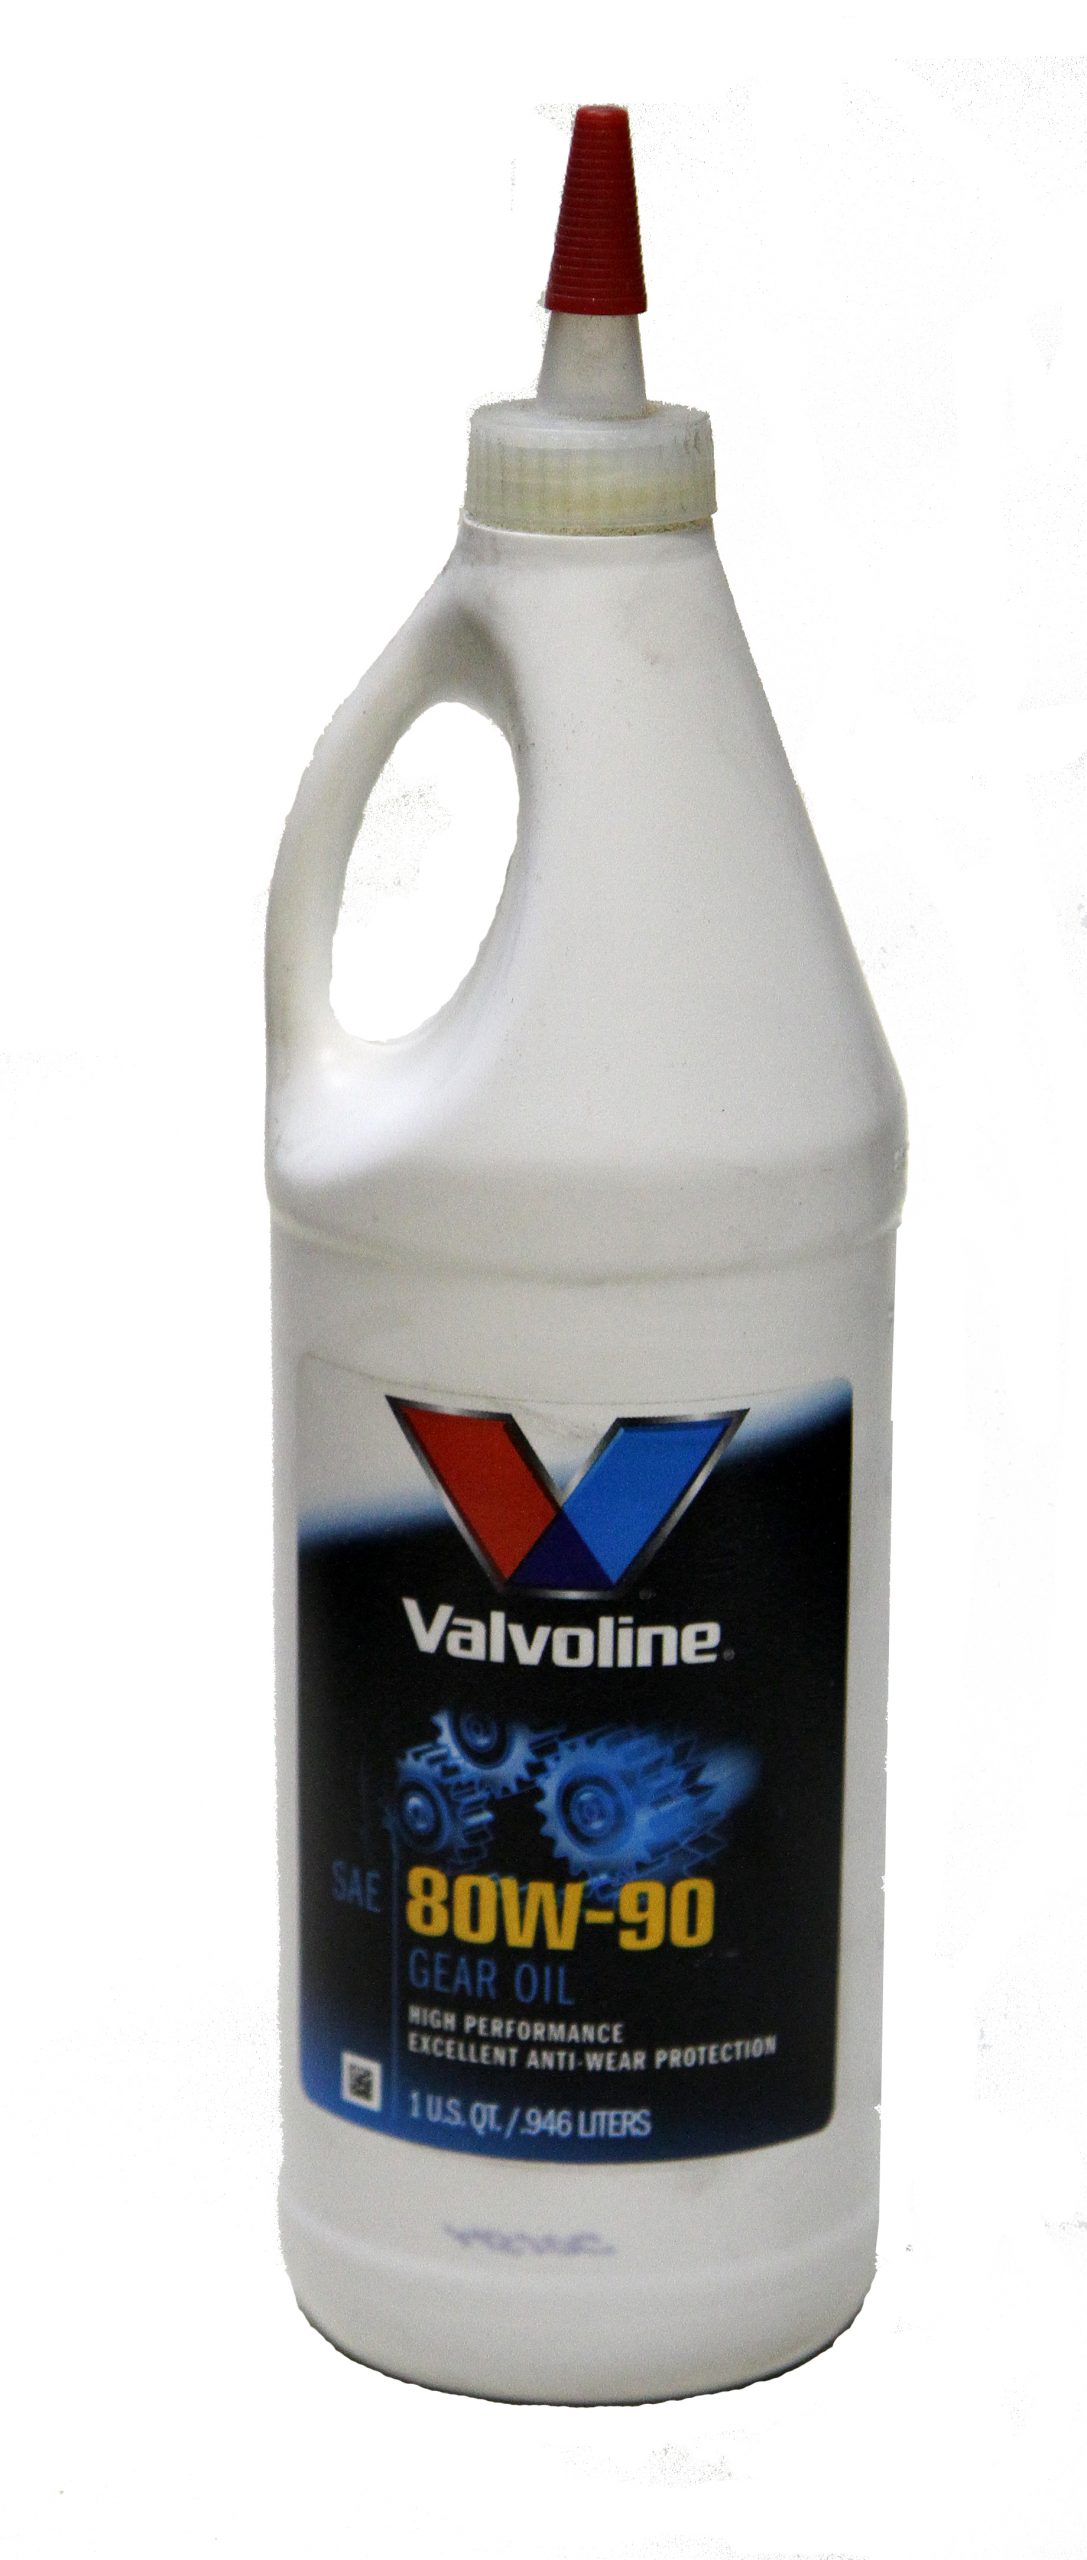 Bottle of Valvoline 80w-90 gear oil 